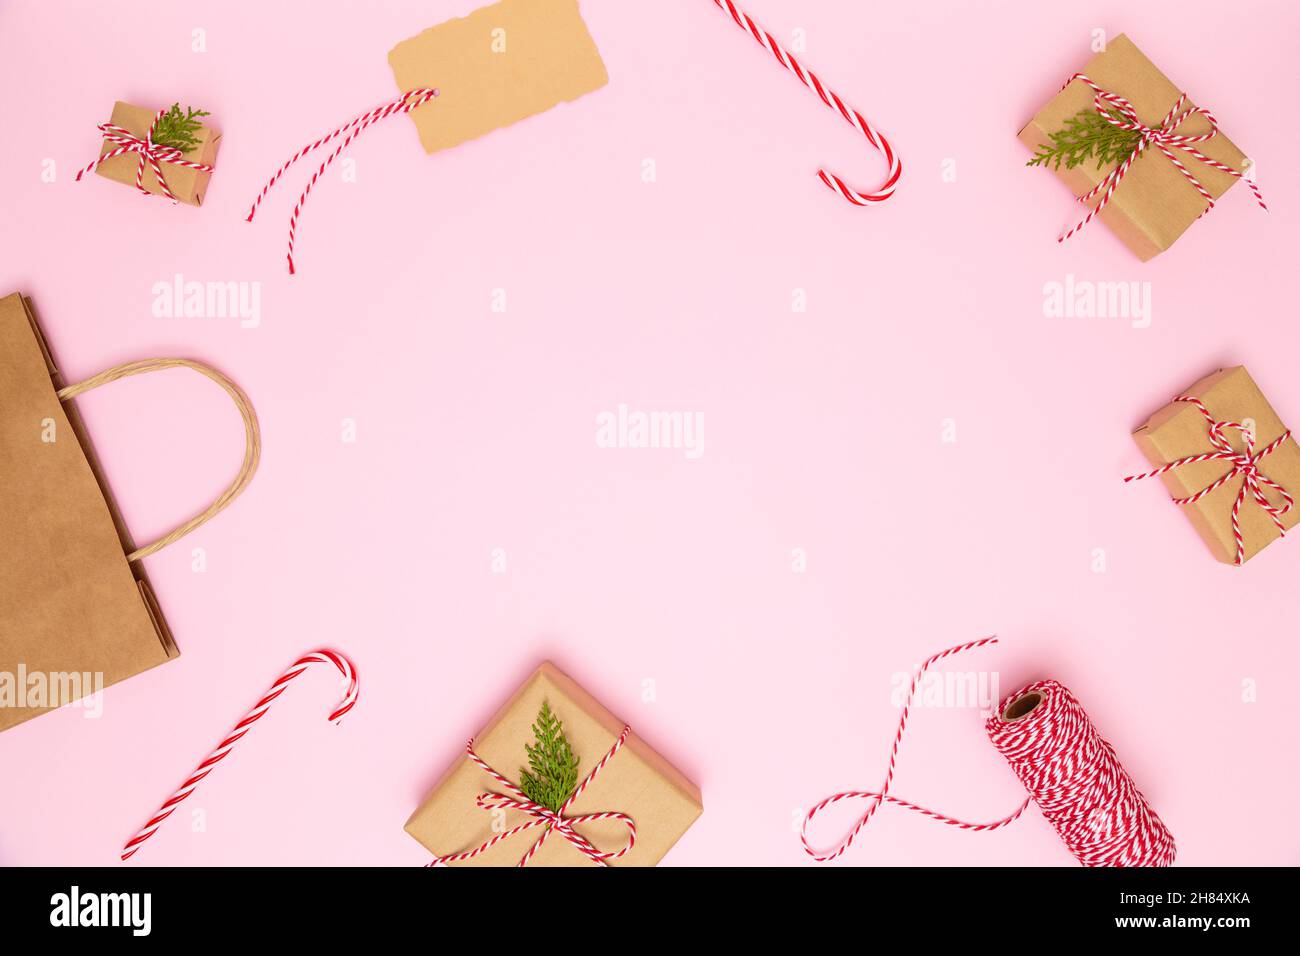 Natale, Capodanno sfondo accogliente. Scatole regalo artigianali fatte a mano con archi rossi, sacchetto di carta, caramelle, nastro rosso, biglietto da visita su sfondo rosa pastello. Foto Stock